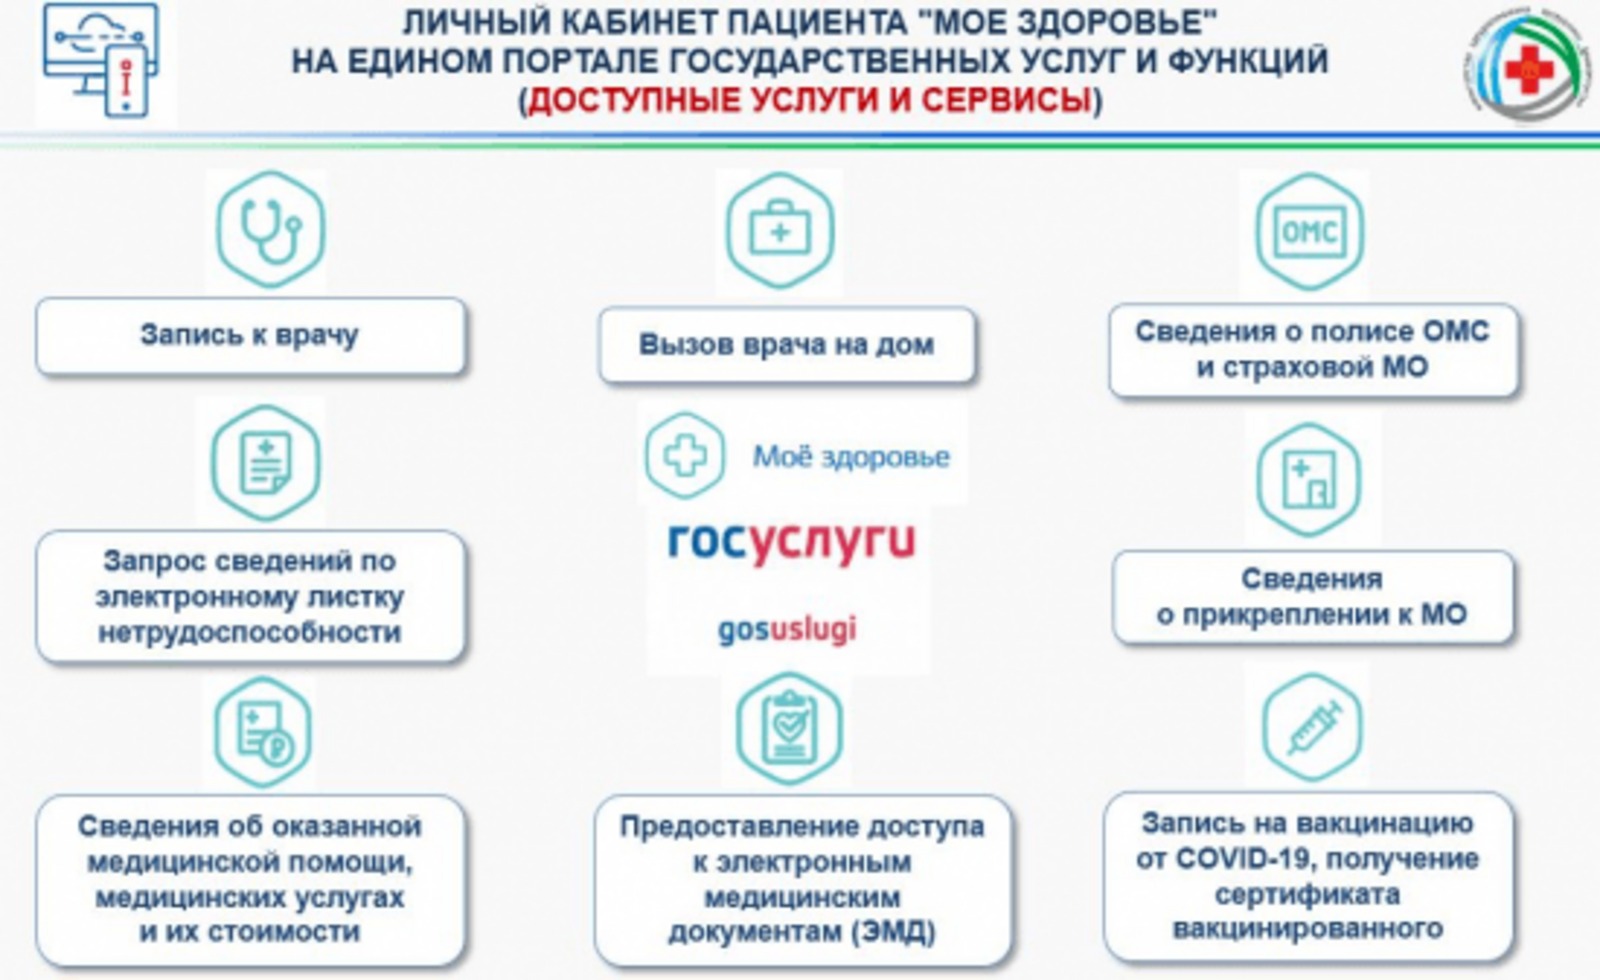 На Едином портале государственных услуг (ЕПГУ) функционирует личный кабинет пациента «Моё здоровье» (https://www.gosuslugi.ru/category/health).